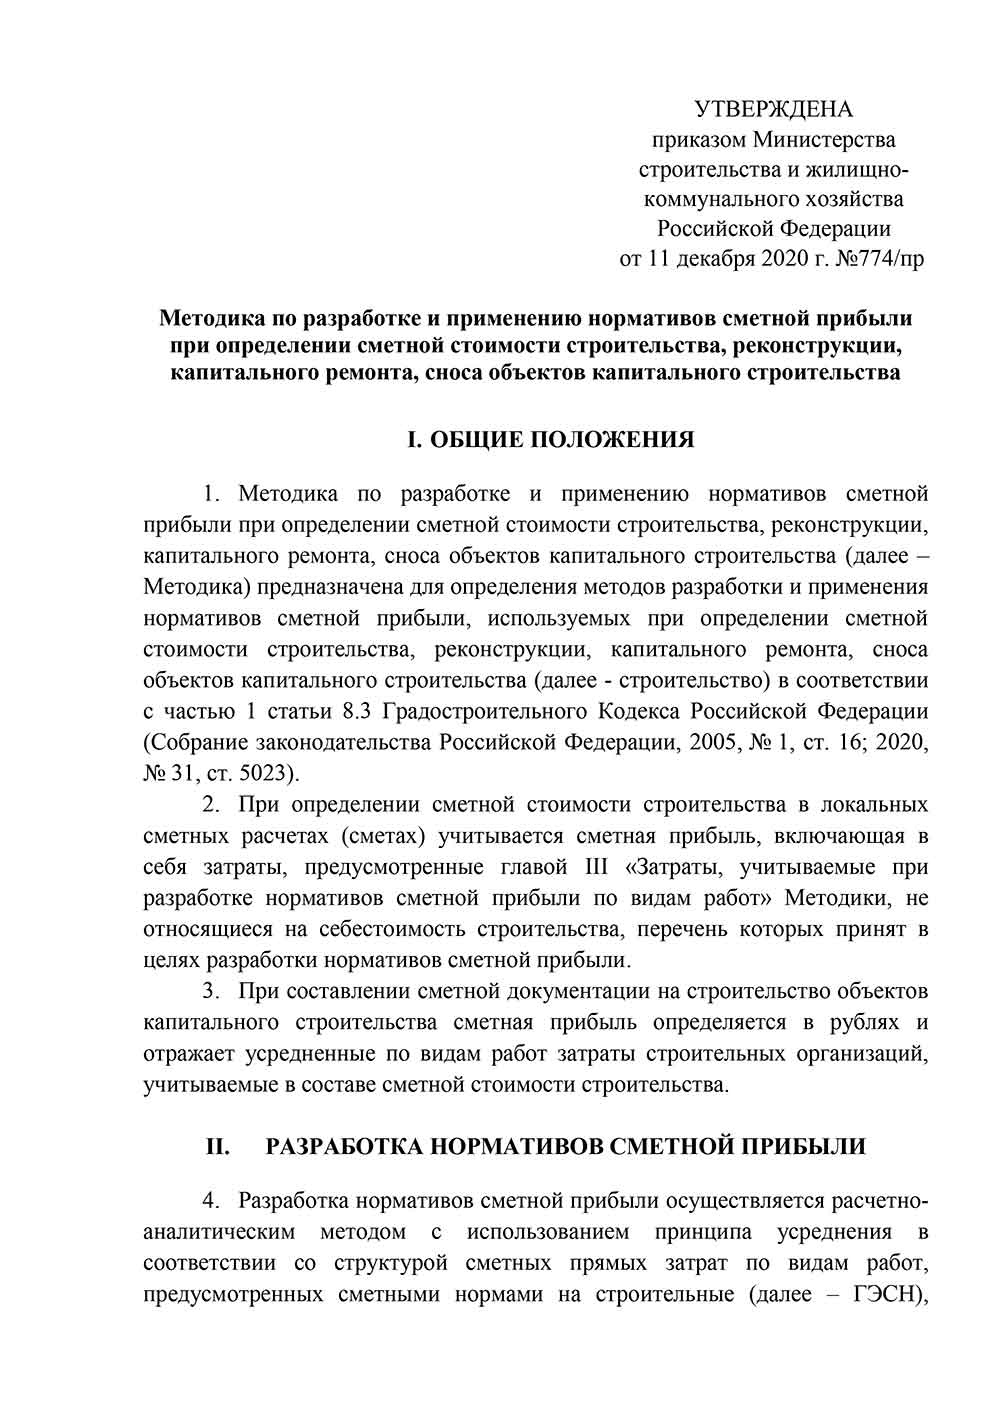 Методика по разработке и применению нормативов сметной прибыли (от 11.12.2020 №774/пр)